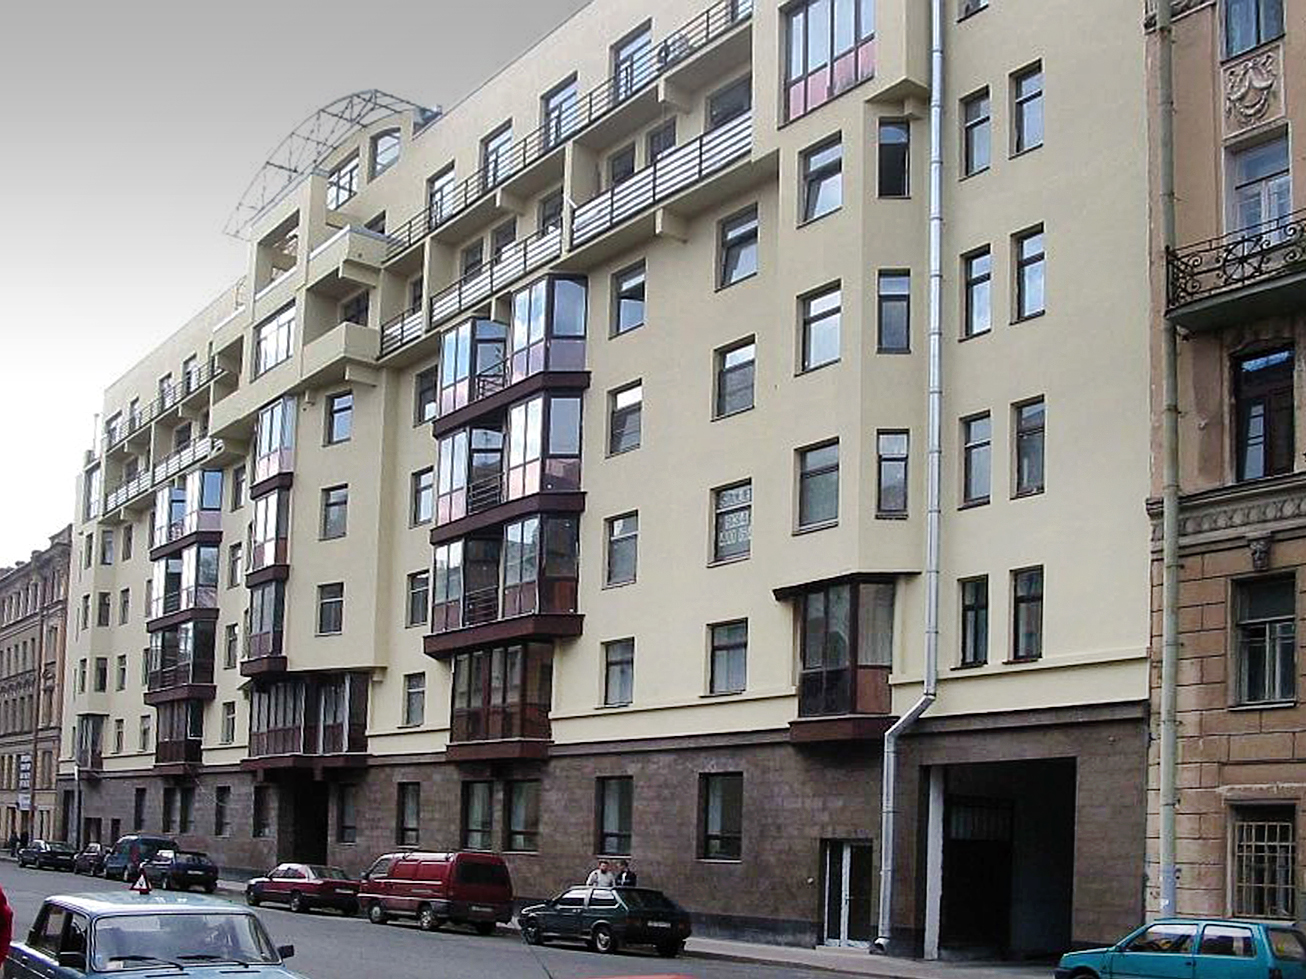 Элитный жилой дом. Санкт-Петербург, 8-я Советская ул., 37. 2001–2002